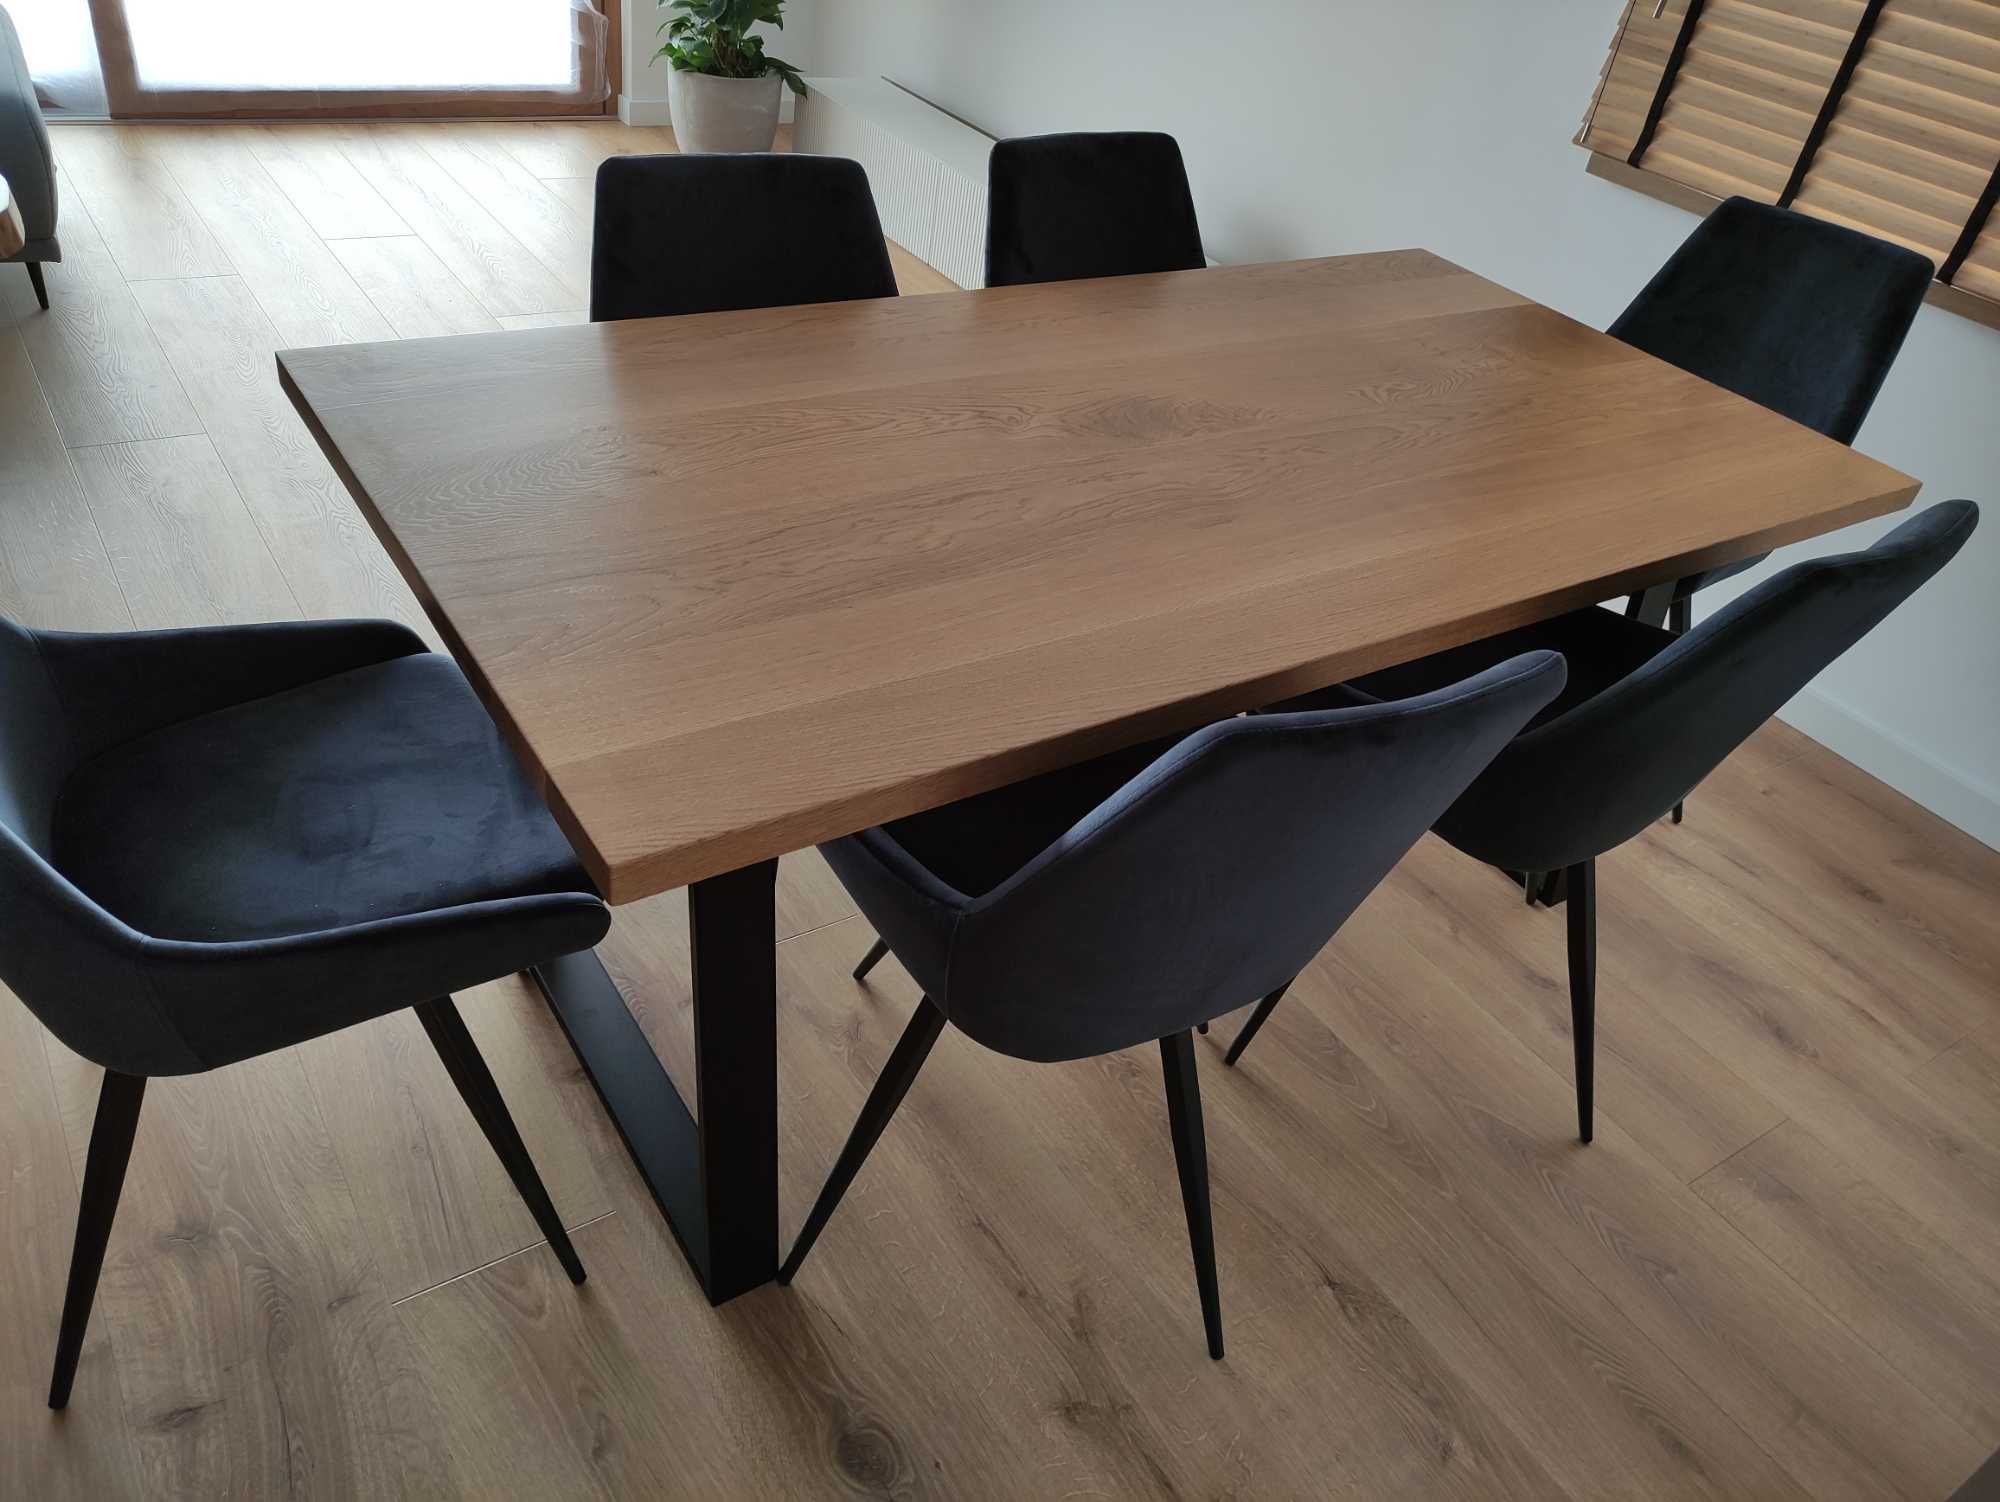 Stół dębowy 180x80 nogi metalowe biuro, ława stolik kawowy